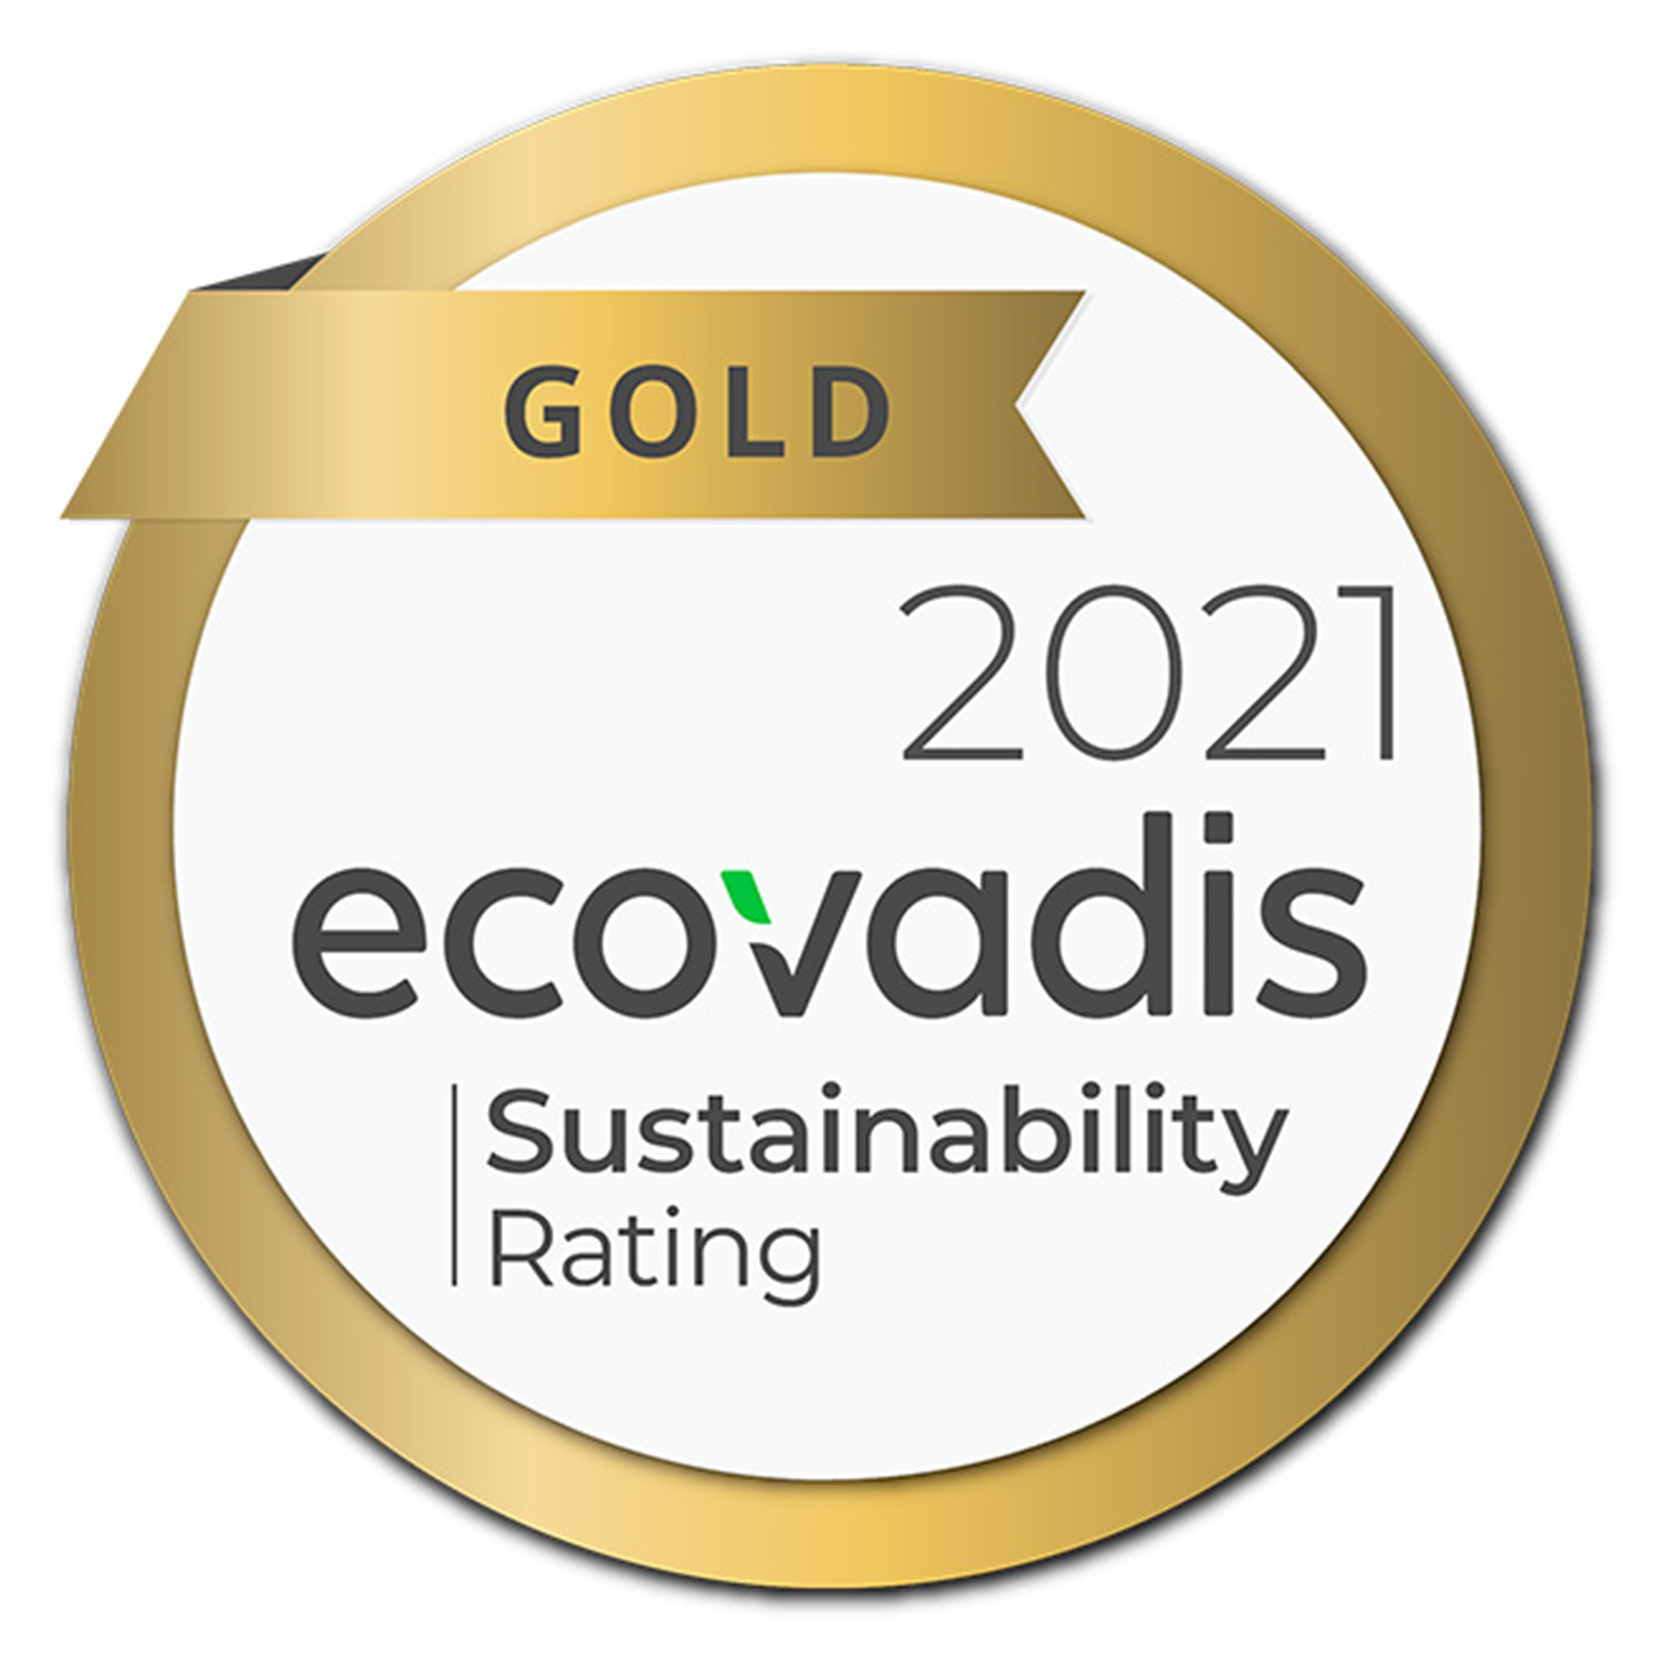 L&L Products, sürdürülebilirlik konusundaki sürekli bağlılığı nedeniyle 2021 yılında EcoVadis tarafından ALTıN madalya ile ödüllendirildi. Bu da L&L Ürünlerini sektöründeki şirketlerin ilk %5'ine sokuyor. Çalışanlarımızın ve yönetimimizin taahhüdü sayesinde, değerlendirilen tüm kategorilerde puanımızı artırdık: Çevre, İnsan Hakları ve Çalışma, Etik ve Sürdürülebilir Satın Alma.